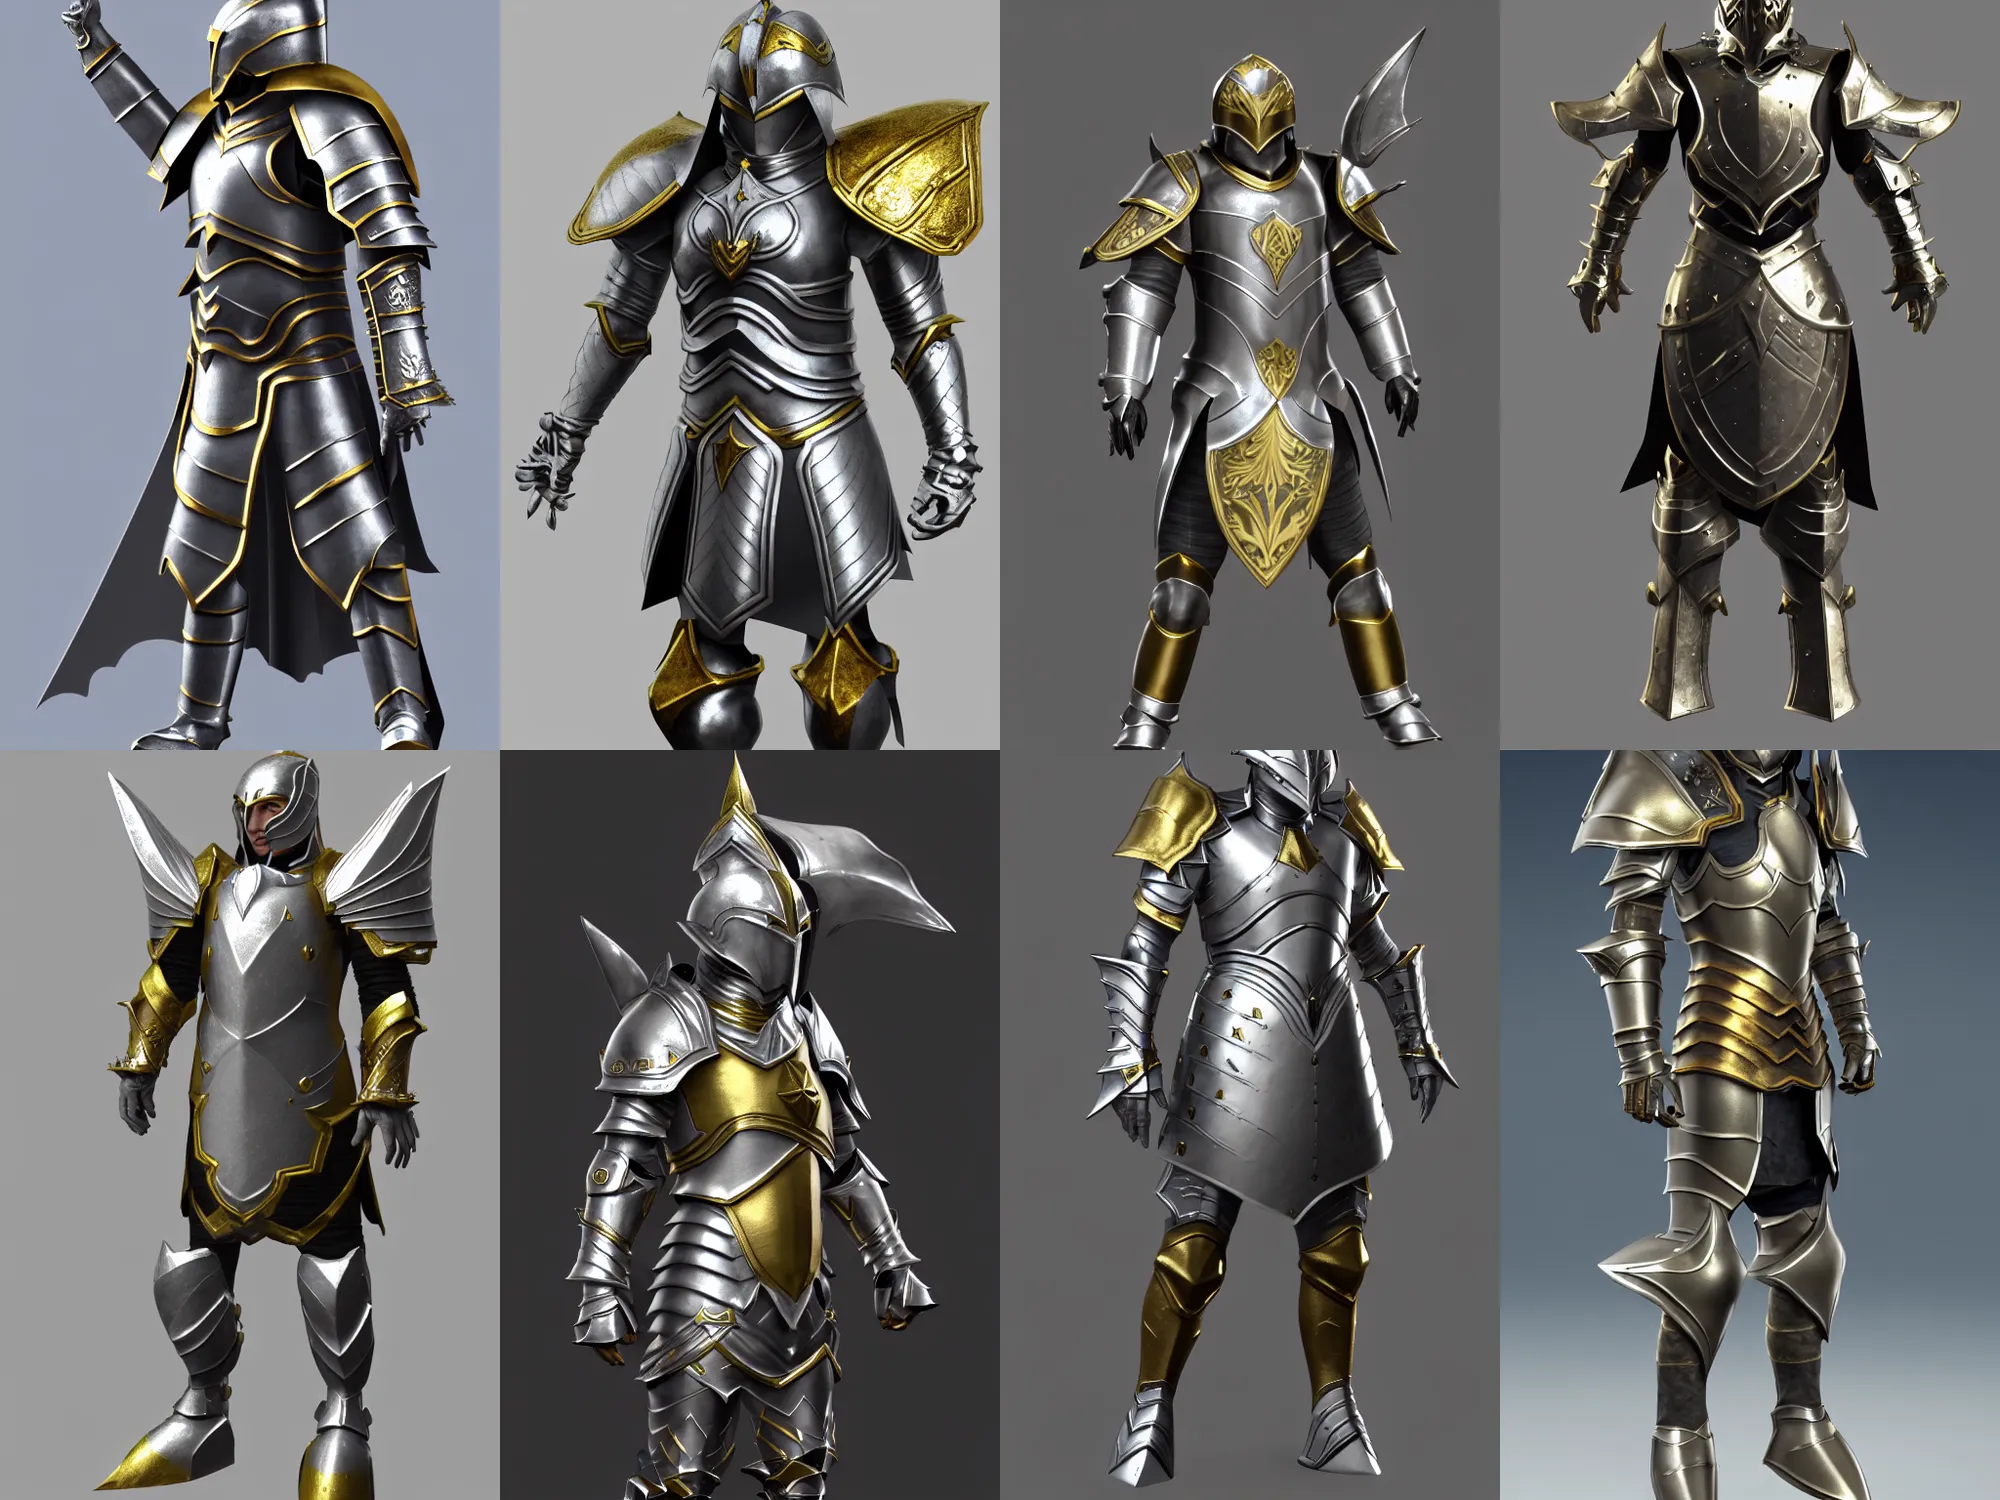 Heroic Knight's Armor